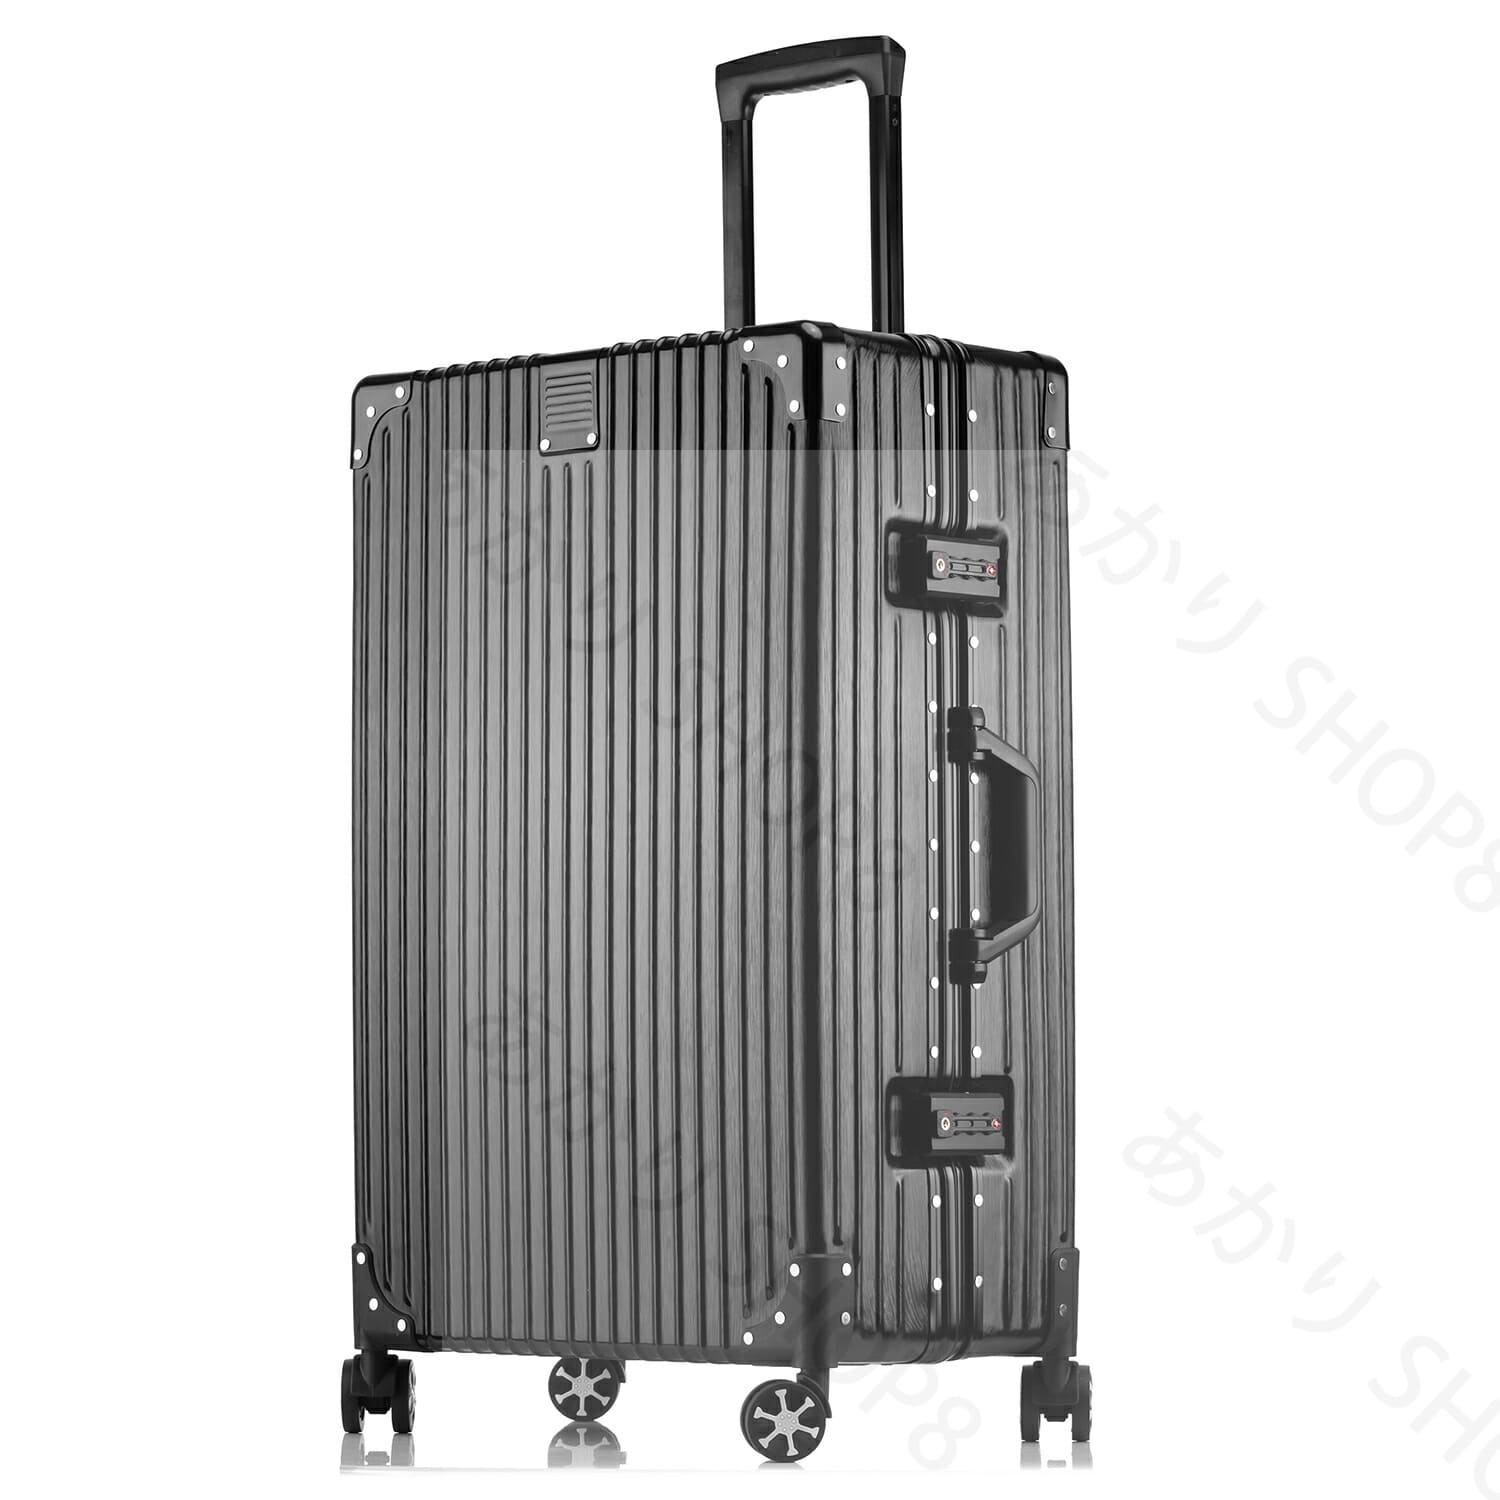 楽天あかりSHOP8スーツケース XLサイズ キャリーバッグ キャリーケース トランクケース トロリーケース アルミフレーム 軽量 ダブル 大型 大容量 空港 旅行カバン 女の子 男の子 世界基準 TSAロック ダイヤルロック 送料無料